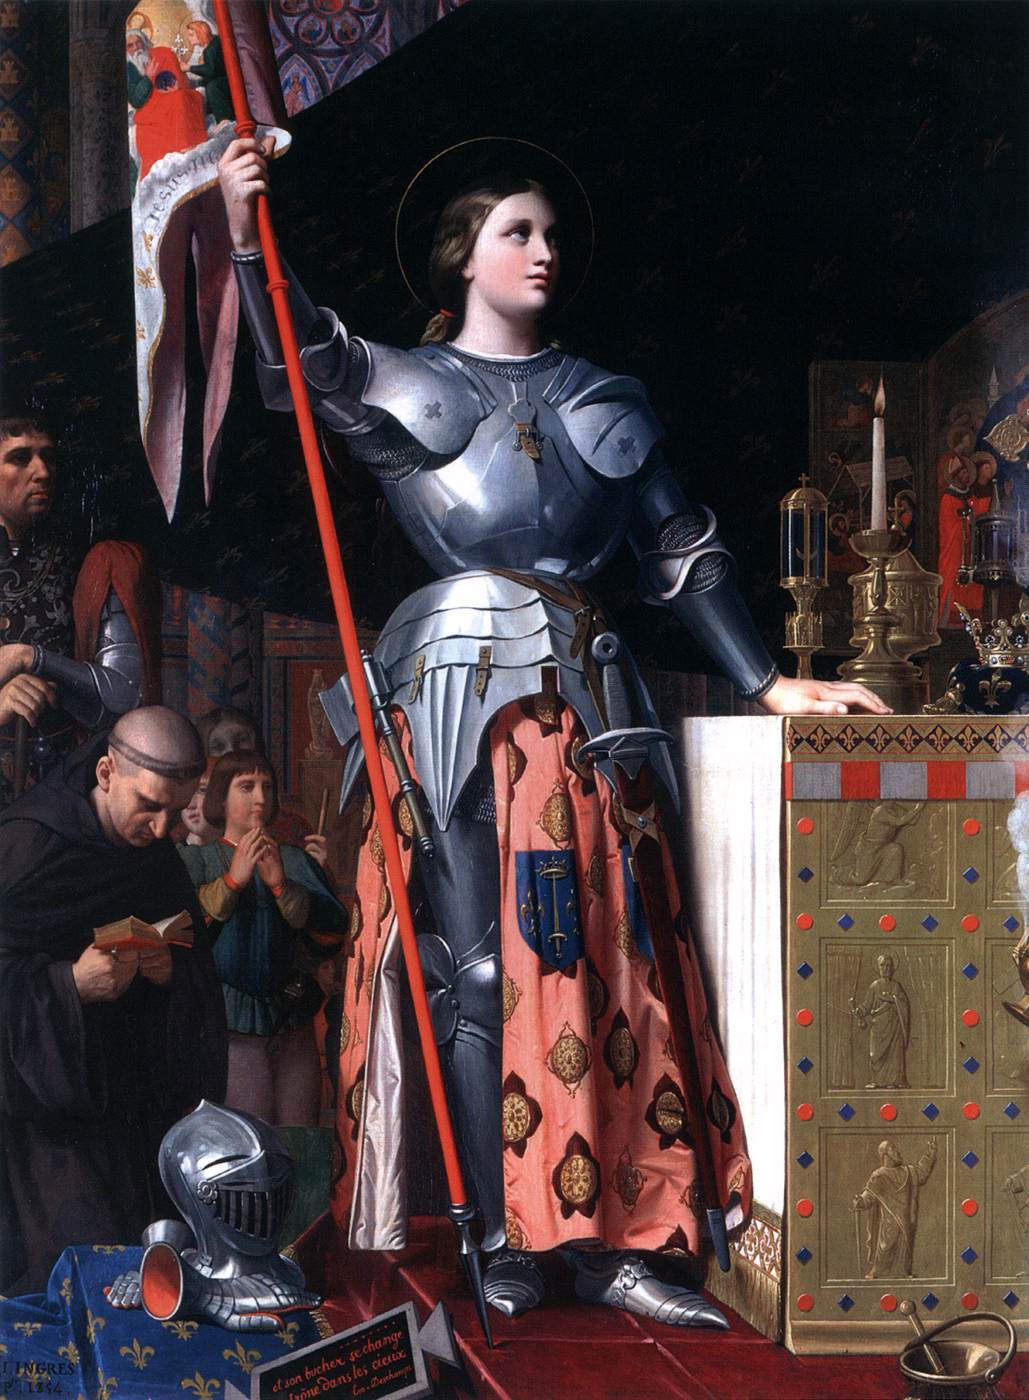 Joan de Arco nella Coronazione di Carlos VII nella Cattedrale di Reims